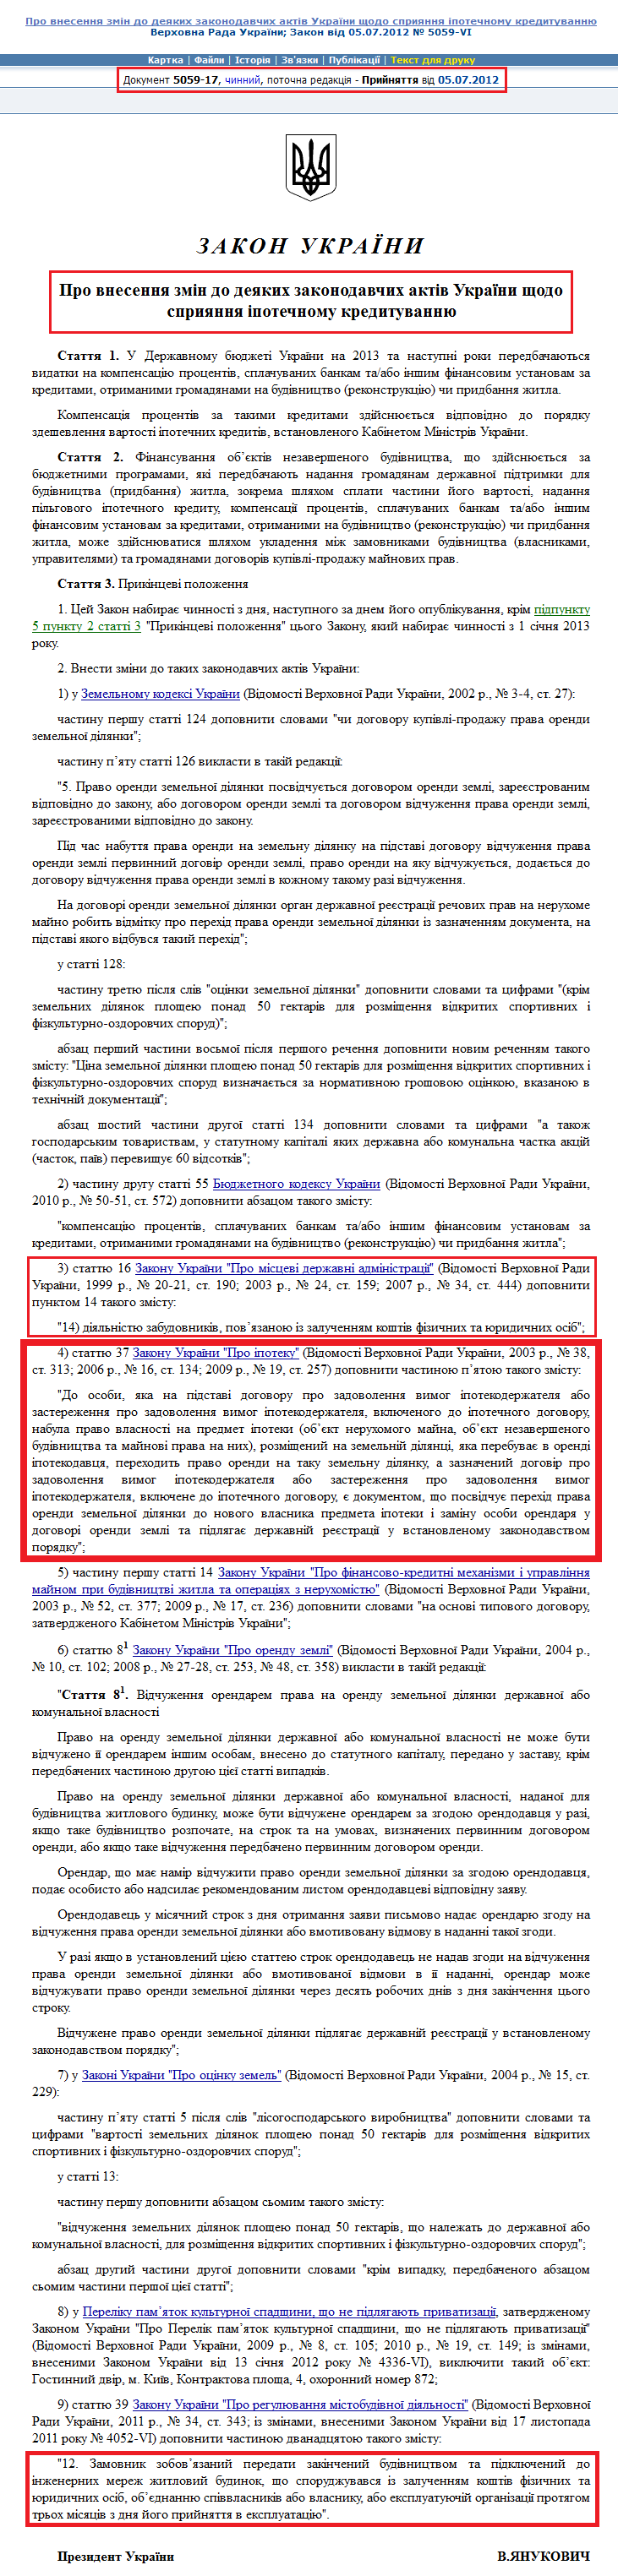 http://zakon3.rada.gov.ua/laws/show/5059-17